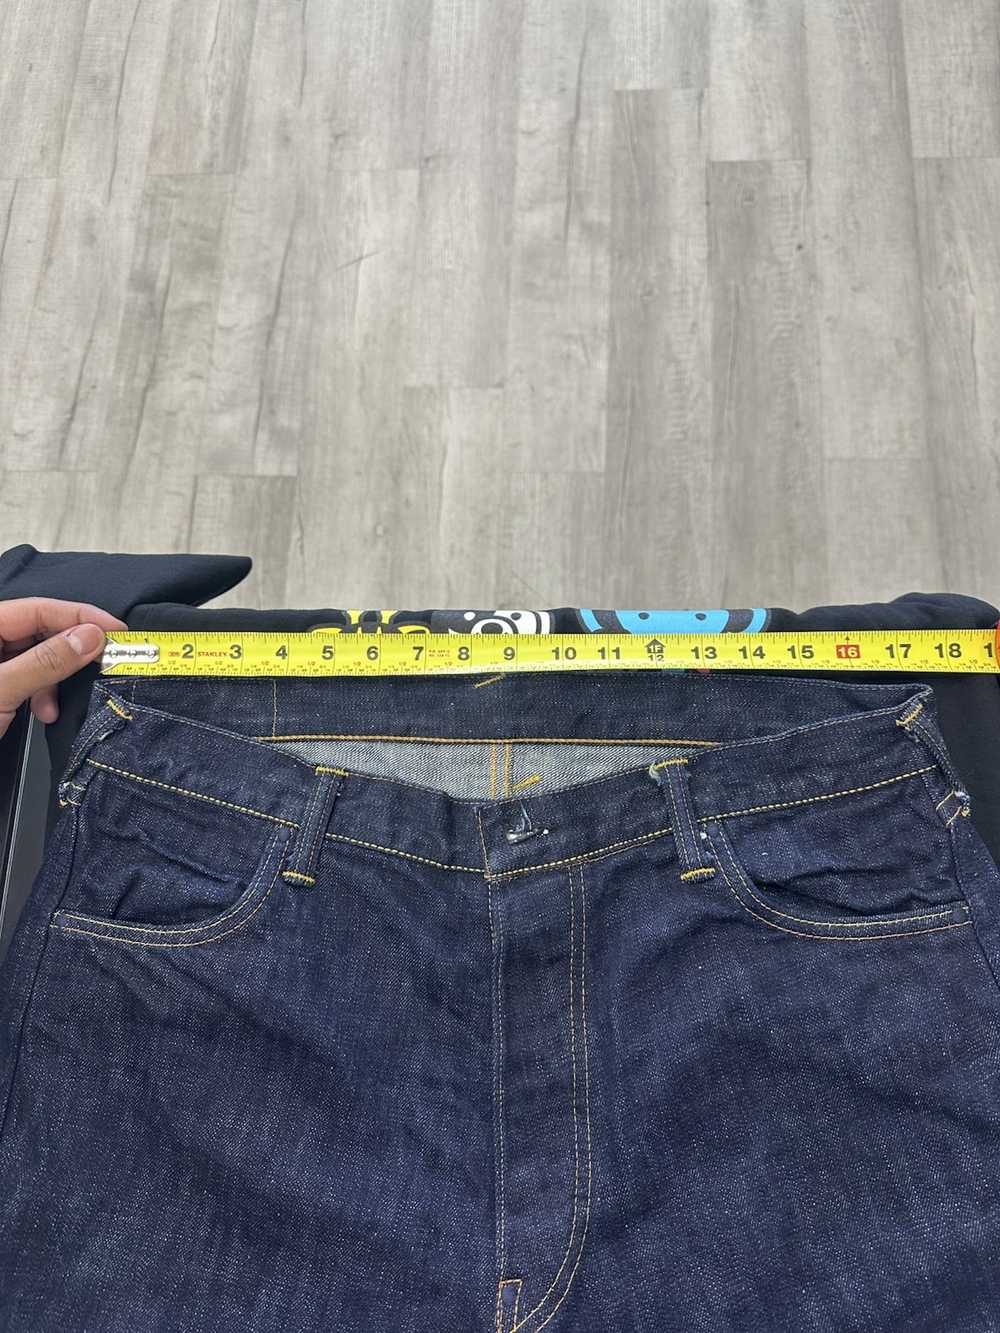 Evisu × Japanese Brand Evisu Jeans Selvedge Denim… - image 6